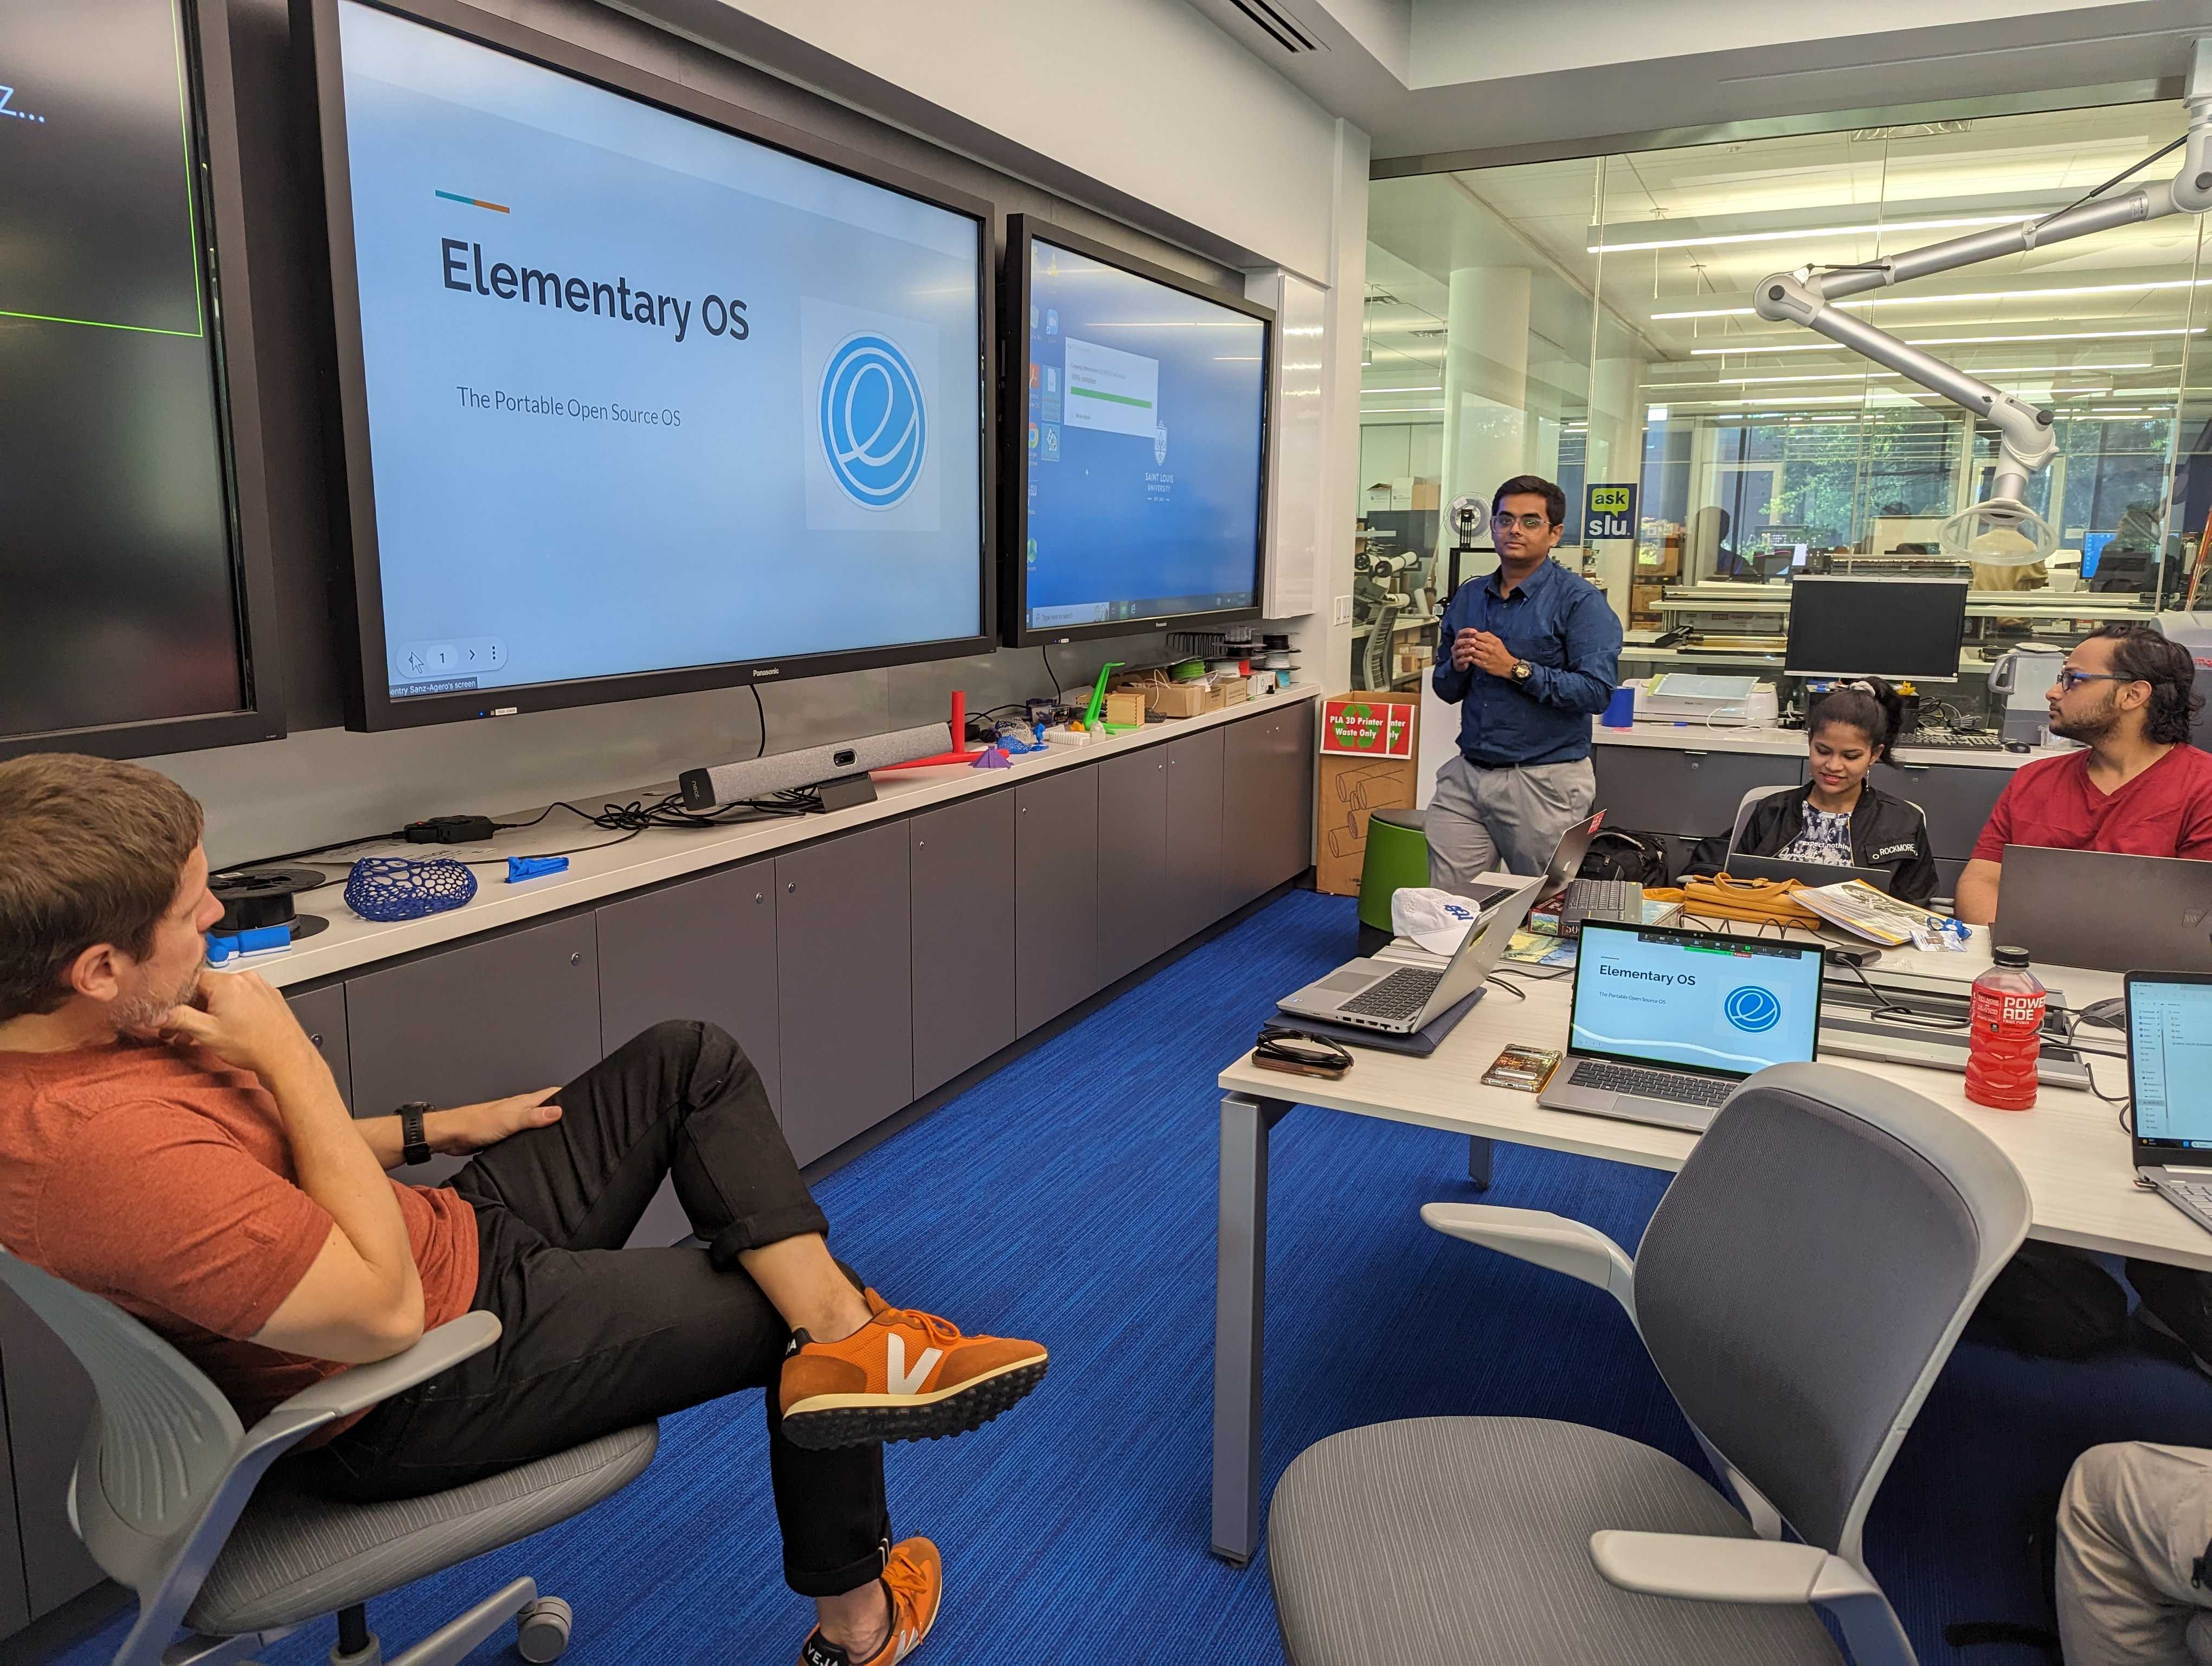 Yash introduces elementary OS